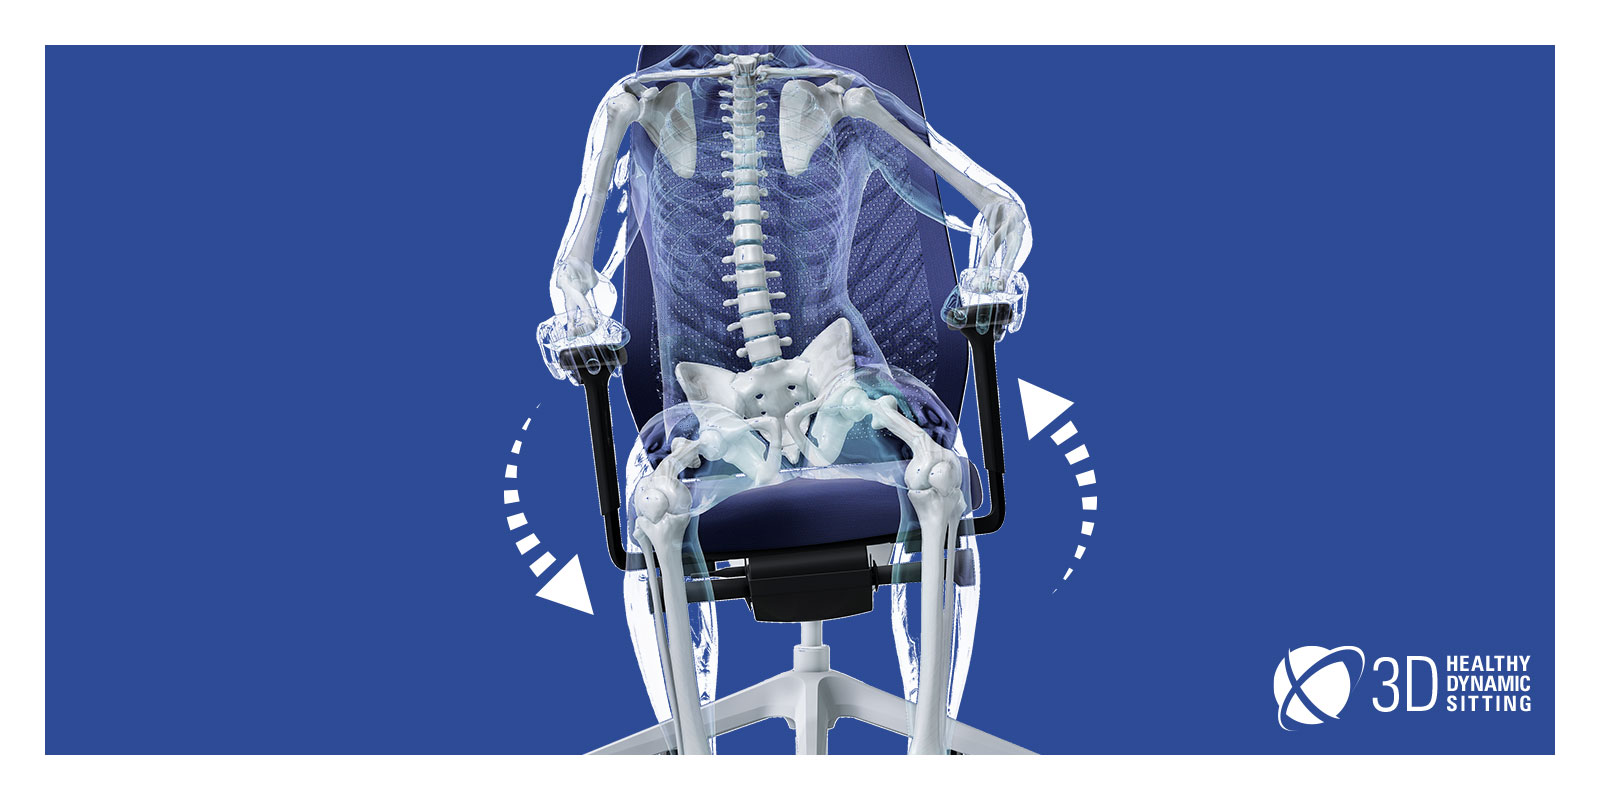 En glasperson, hvis skelet er synligt, sidder på en JOYCE-kontorstol med sort netryglæn, blåt sædebetræk, sorte T-armlæn og plastdele (bl.a. fodkryds og søjlefunktion) samt FlexTech i hvid. Glaspersonen flytter sin vægt til højre side, hvilket bevirker, at stolen tilpasser sig personens bevægelser. To hvide pile danner en cirkel omkring stolen, hvilket fremhæver stolens bevægelighed. FlexTech-funktionen fremmer det at sidde aktivt.